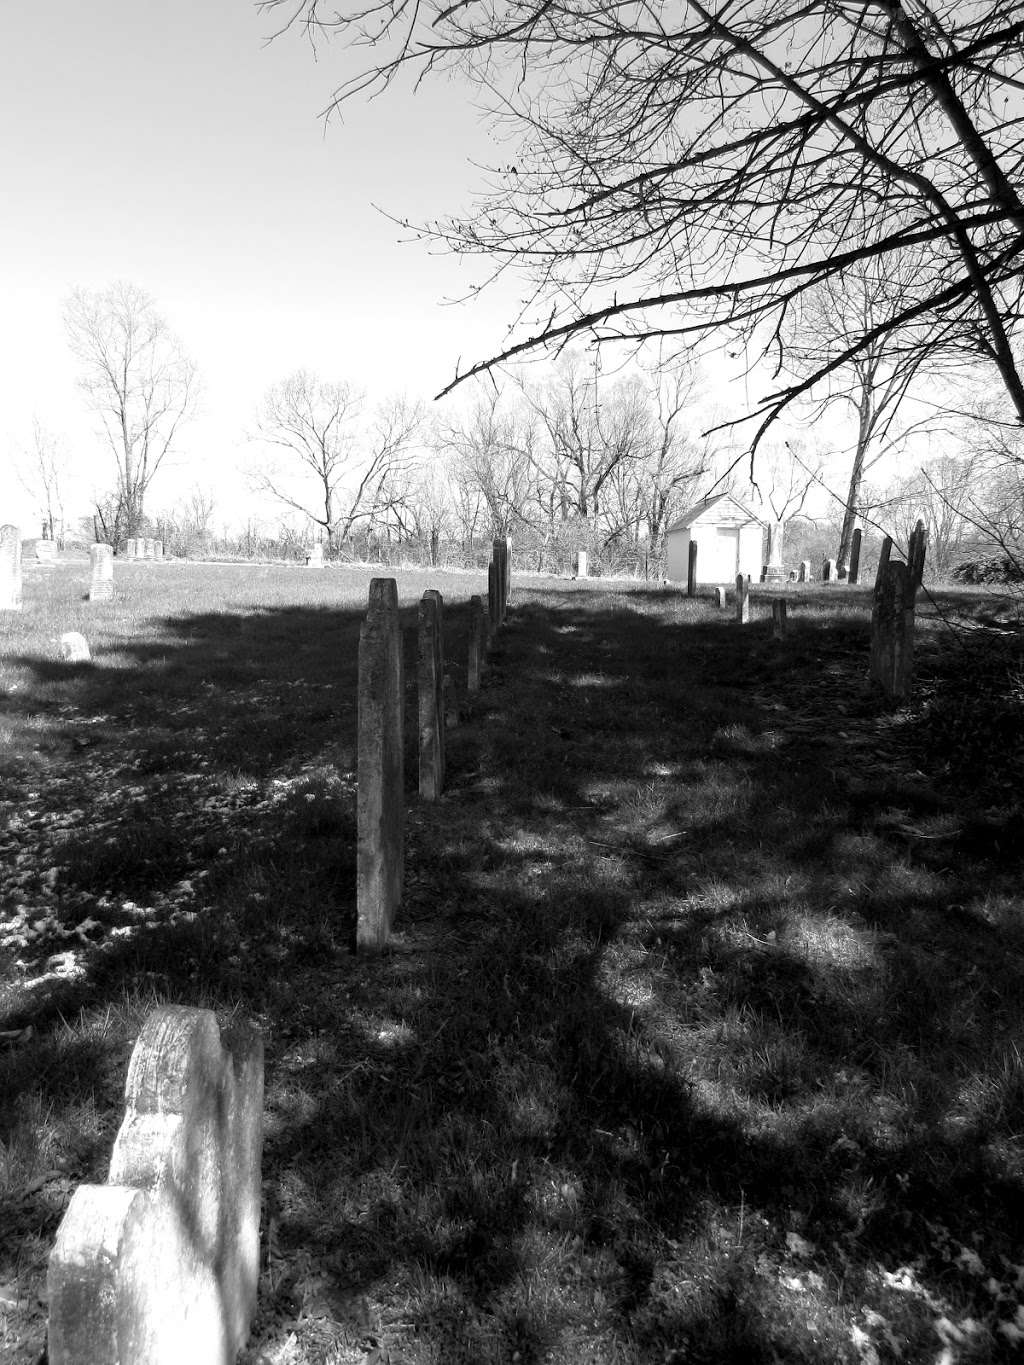 Gerrardstown Lutheran Cemetery | 1544-1646, WV-51, Gerrardstown, WV 25420, USA